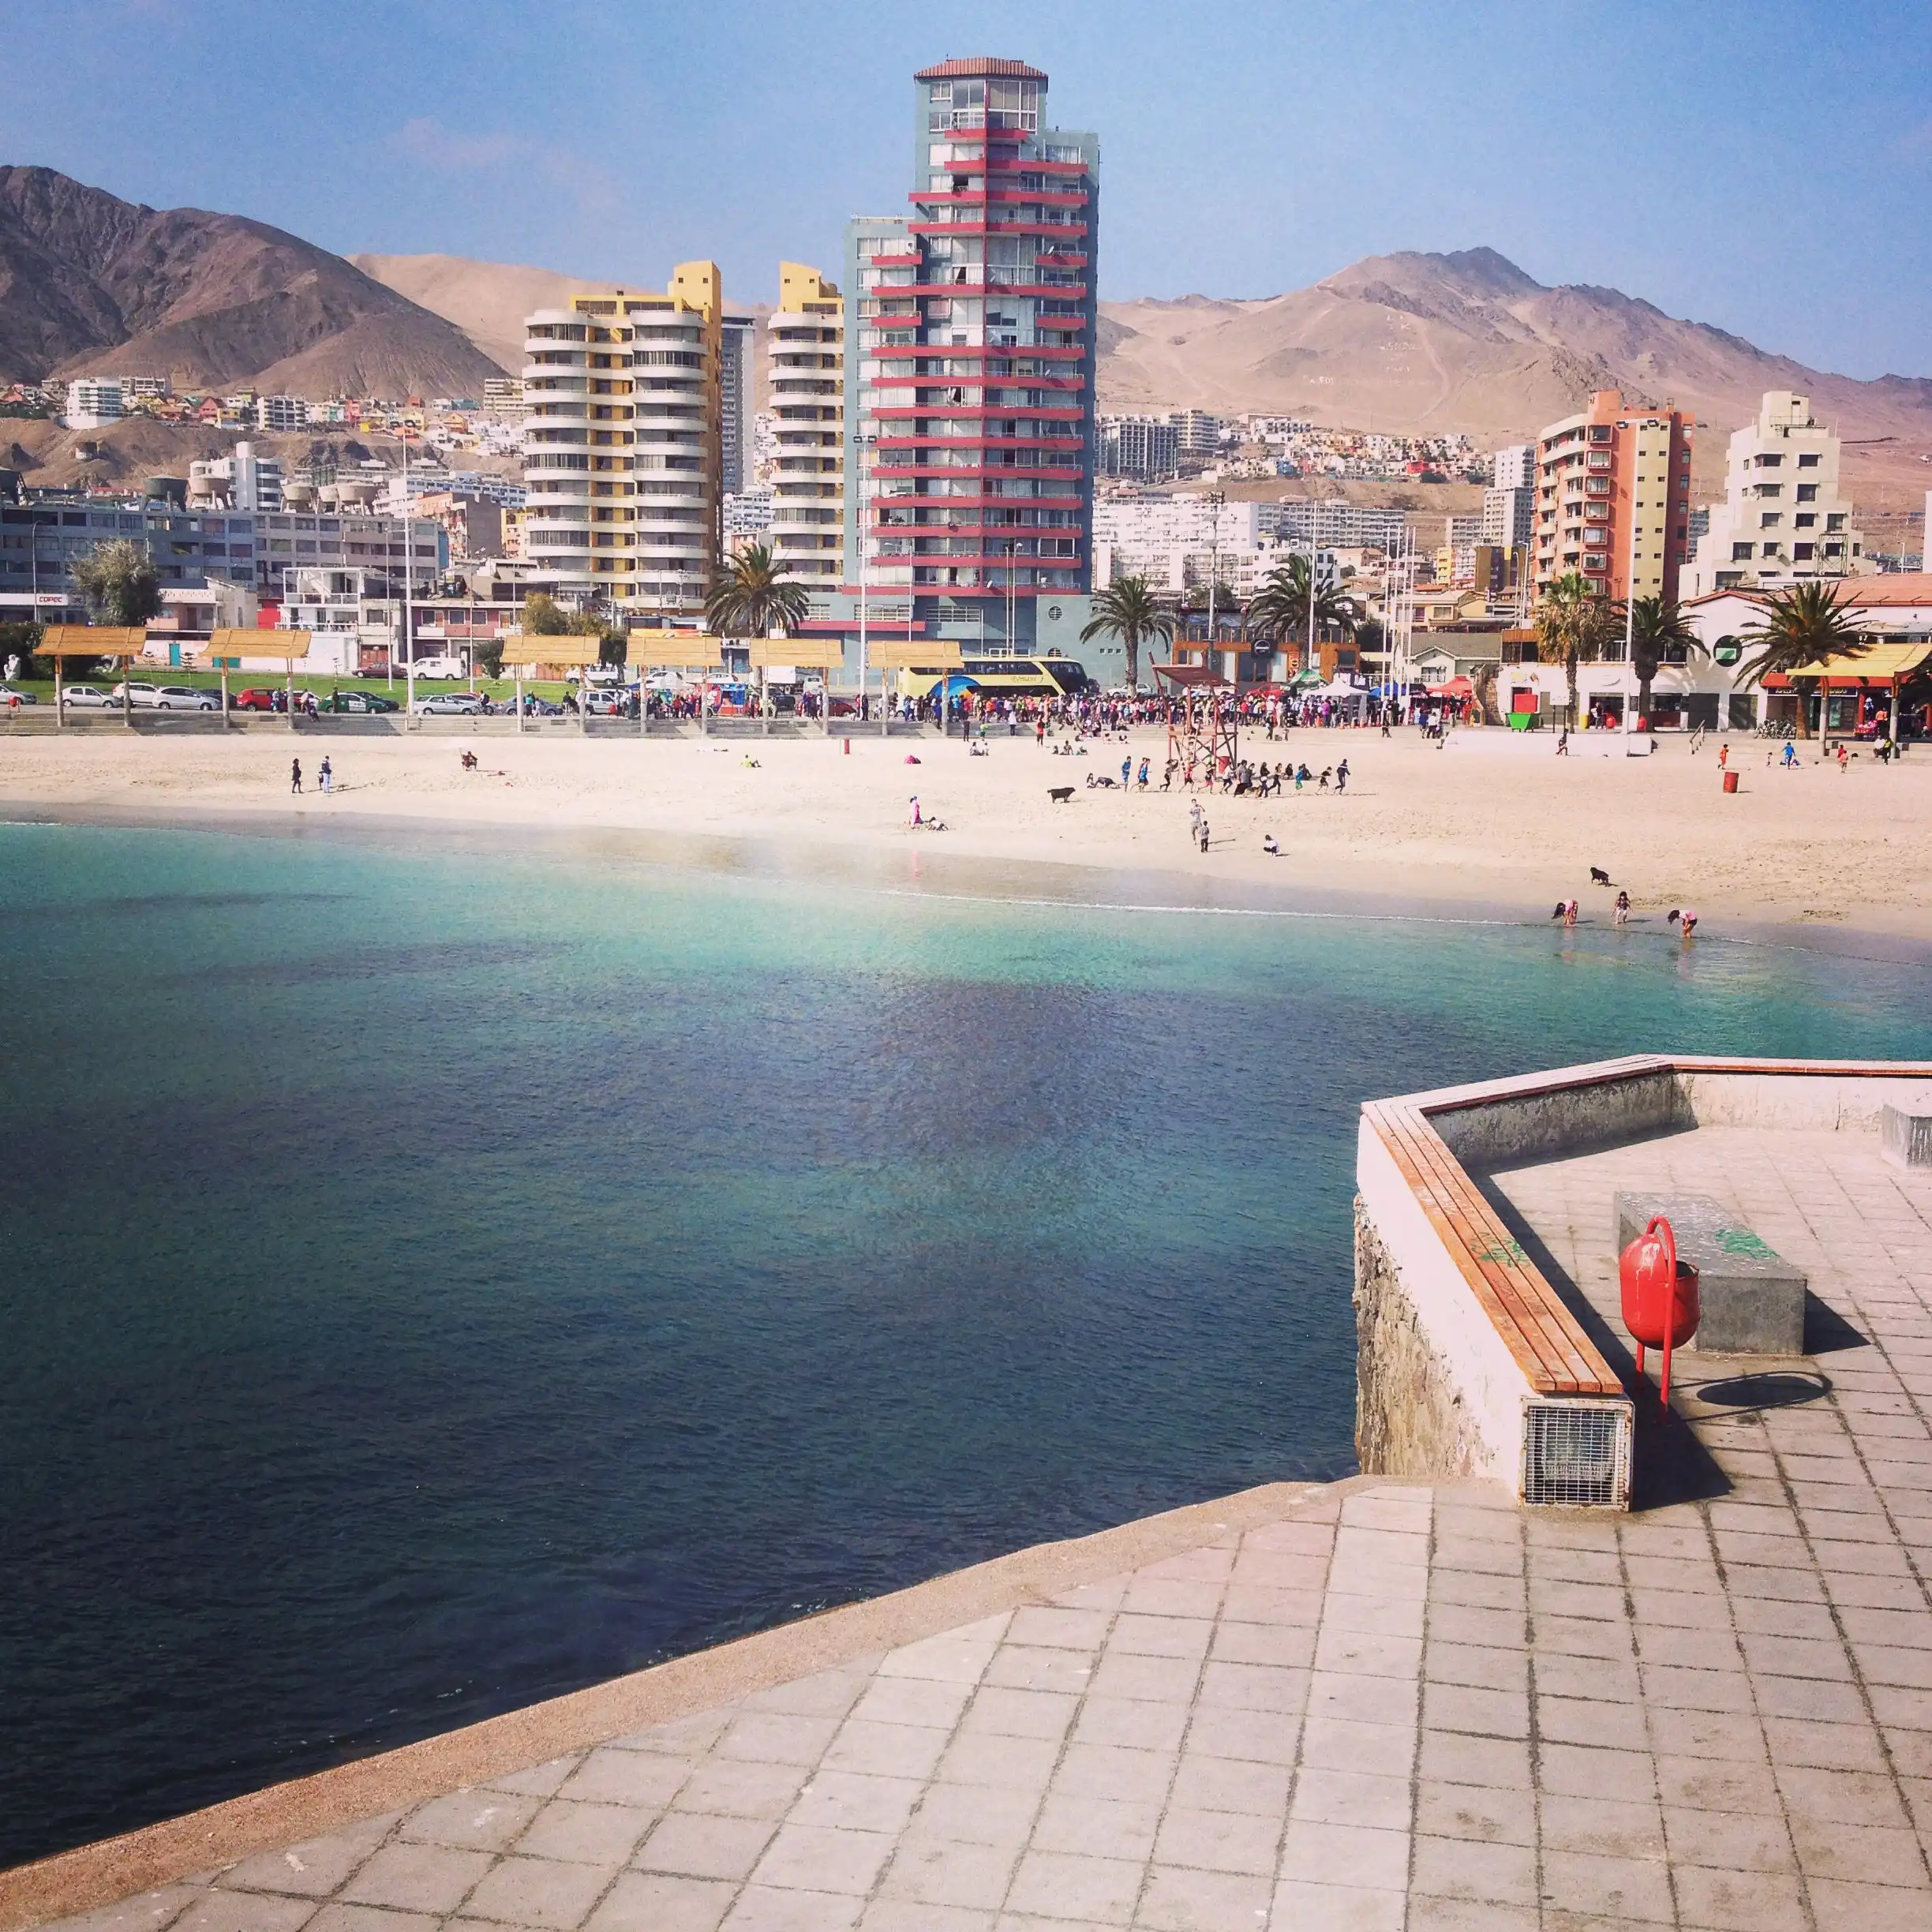 Antofagasta tourism